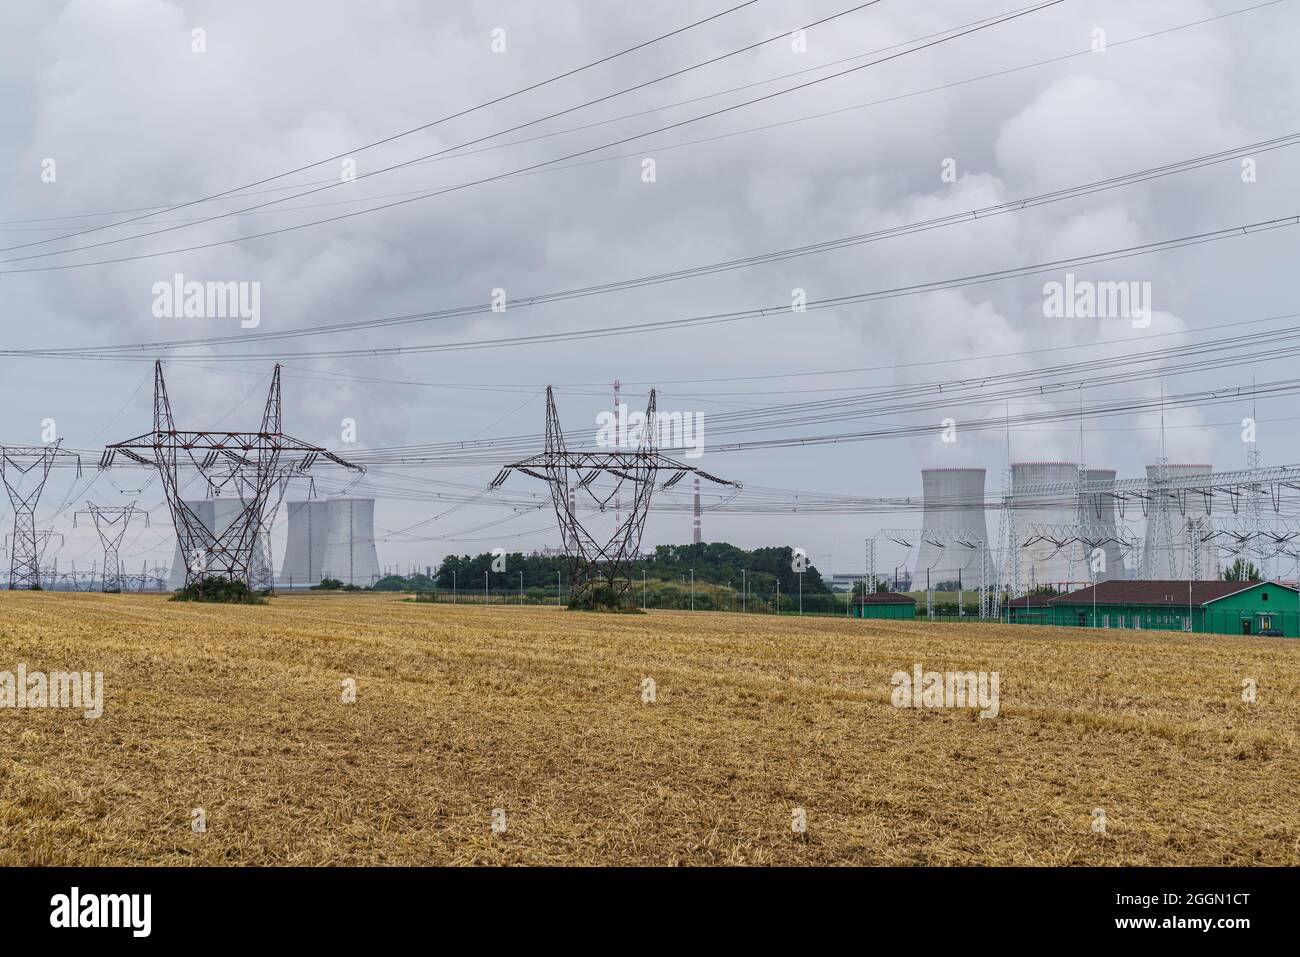 Sous-station transformateur haute tension et centrale nucléaire Dukovany, région de Vysocina, république tchèque, Europe. Banque D'Images